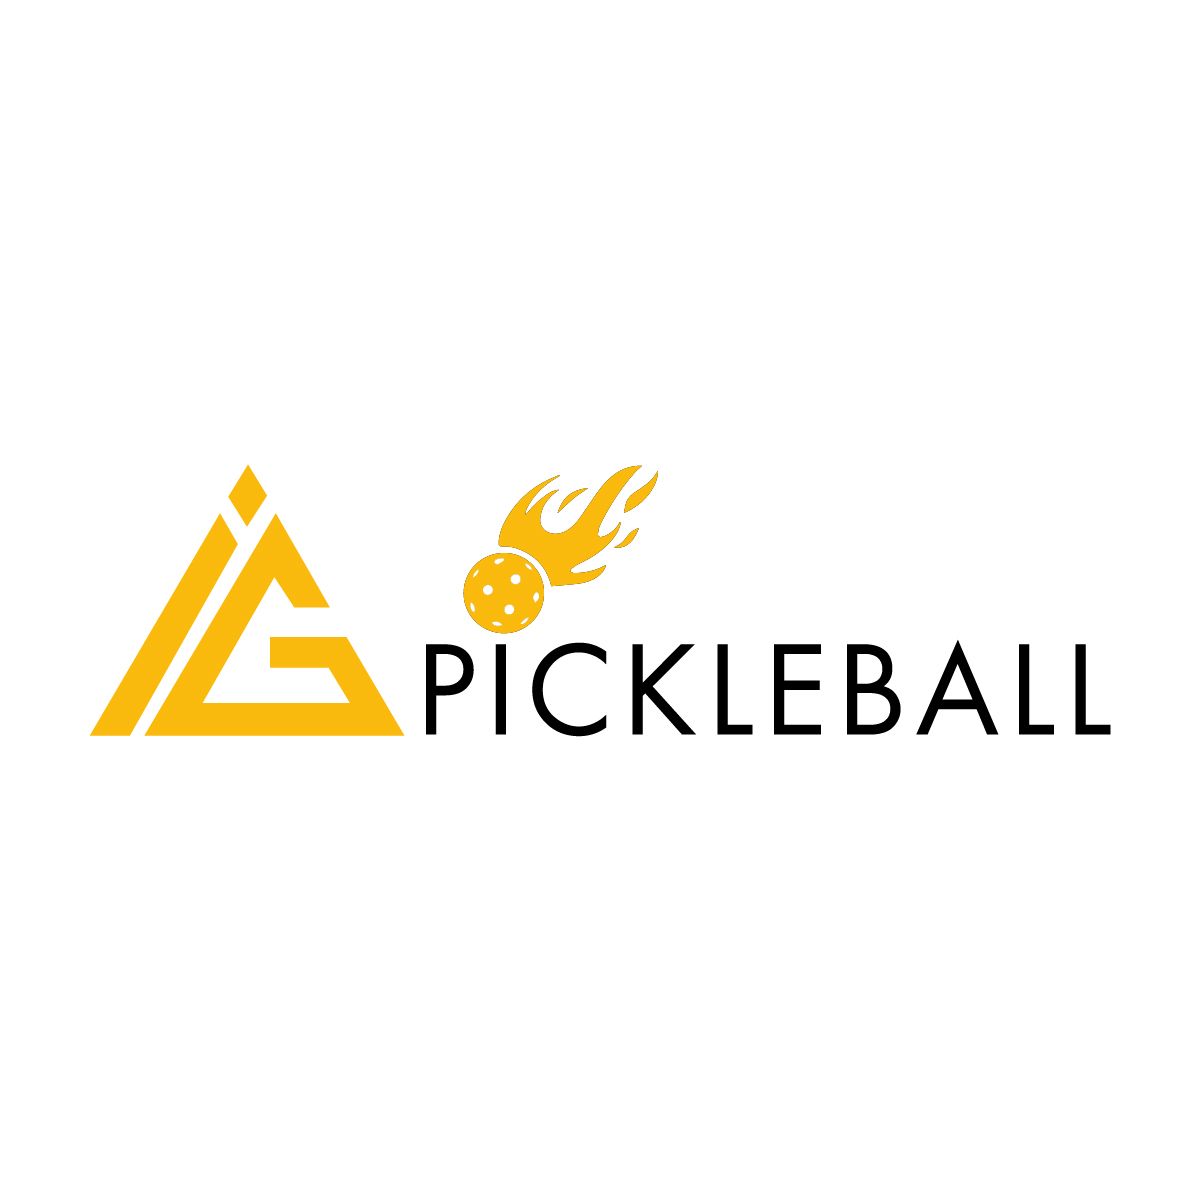 I&G Pickleball Logo